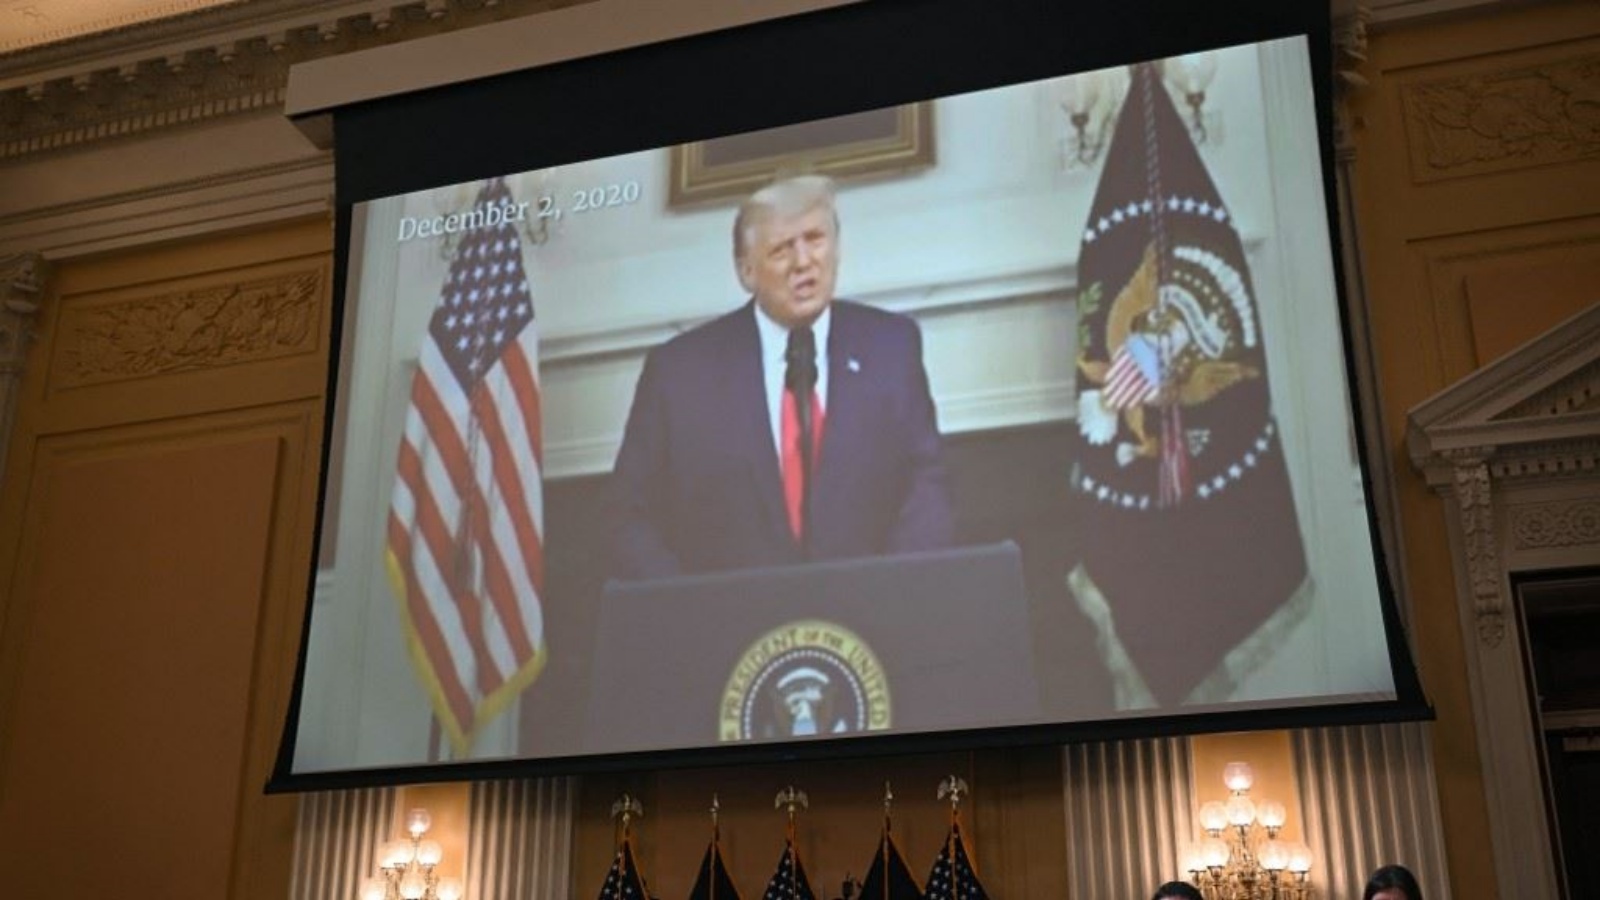 صورة تمّ التقاطها في 13 أكتوبر 2022، تُظهر مقطع فيديو للرئيس الأميركي السابق دونالد ترامب بُثَّ خلال جلسة لجنة مجلس النواب الأميركي المعنية بالتحقيق في هجوم 6 يناير على مبنى الكابيتول الأميركي في العاصمة واشنطن